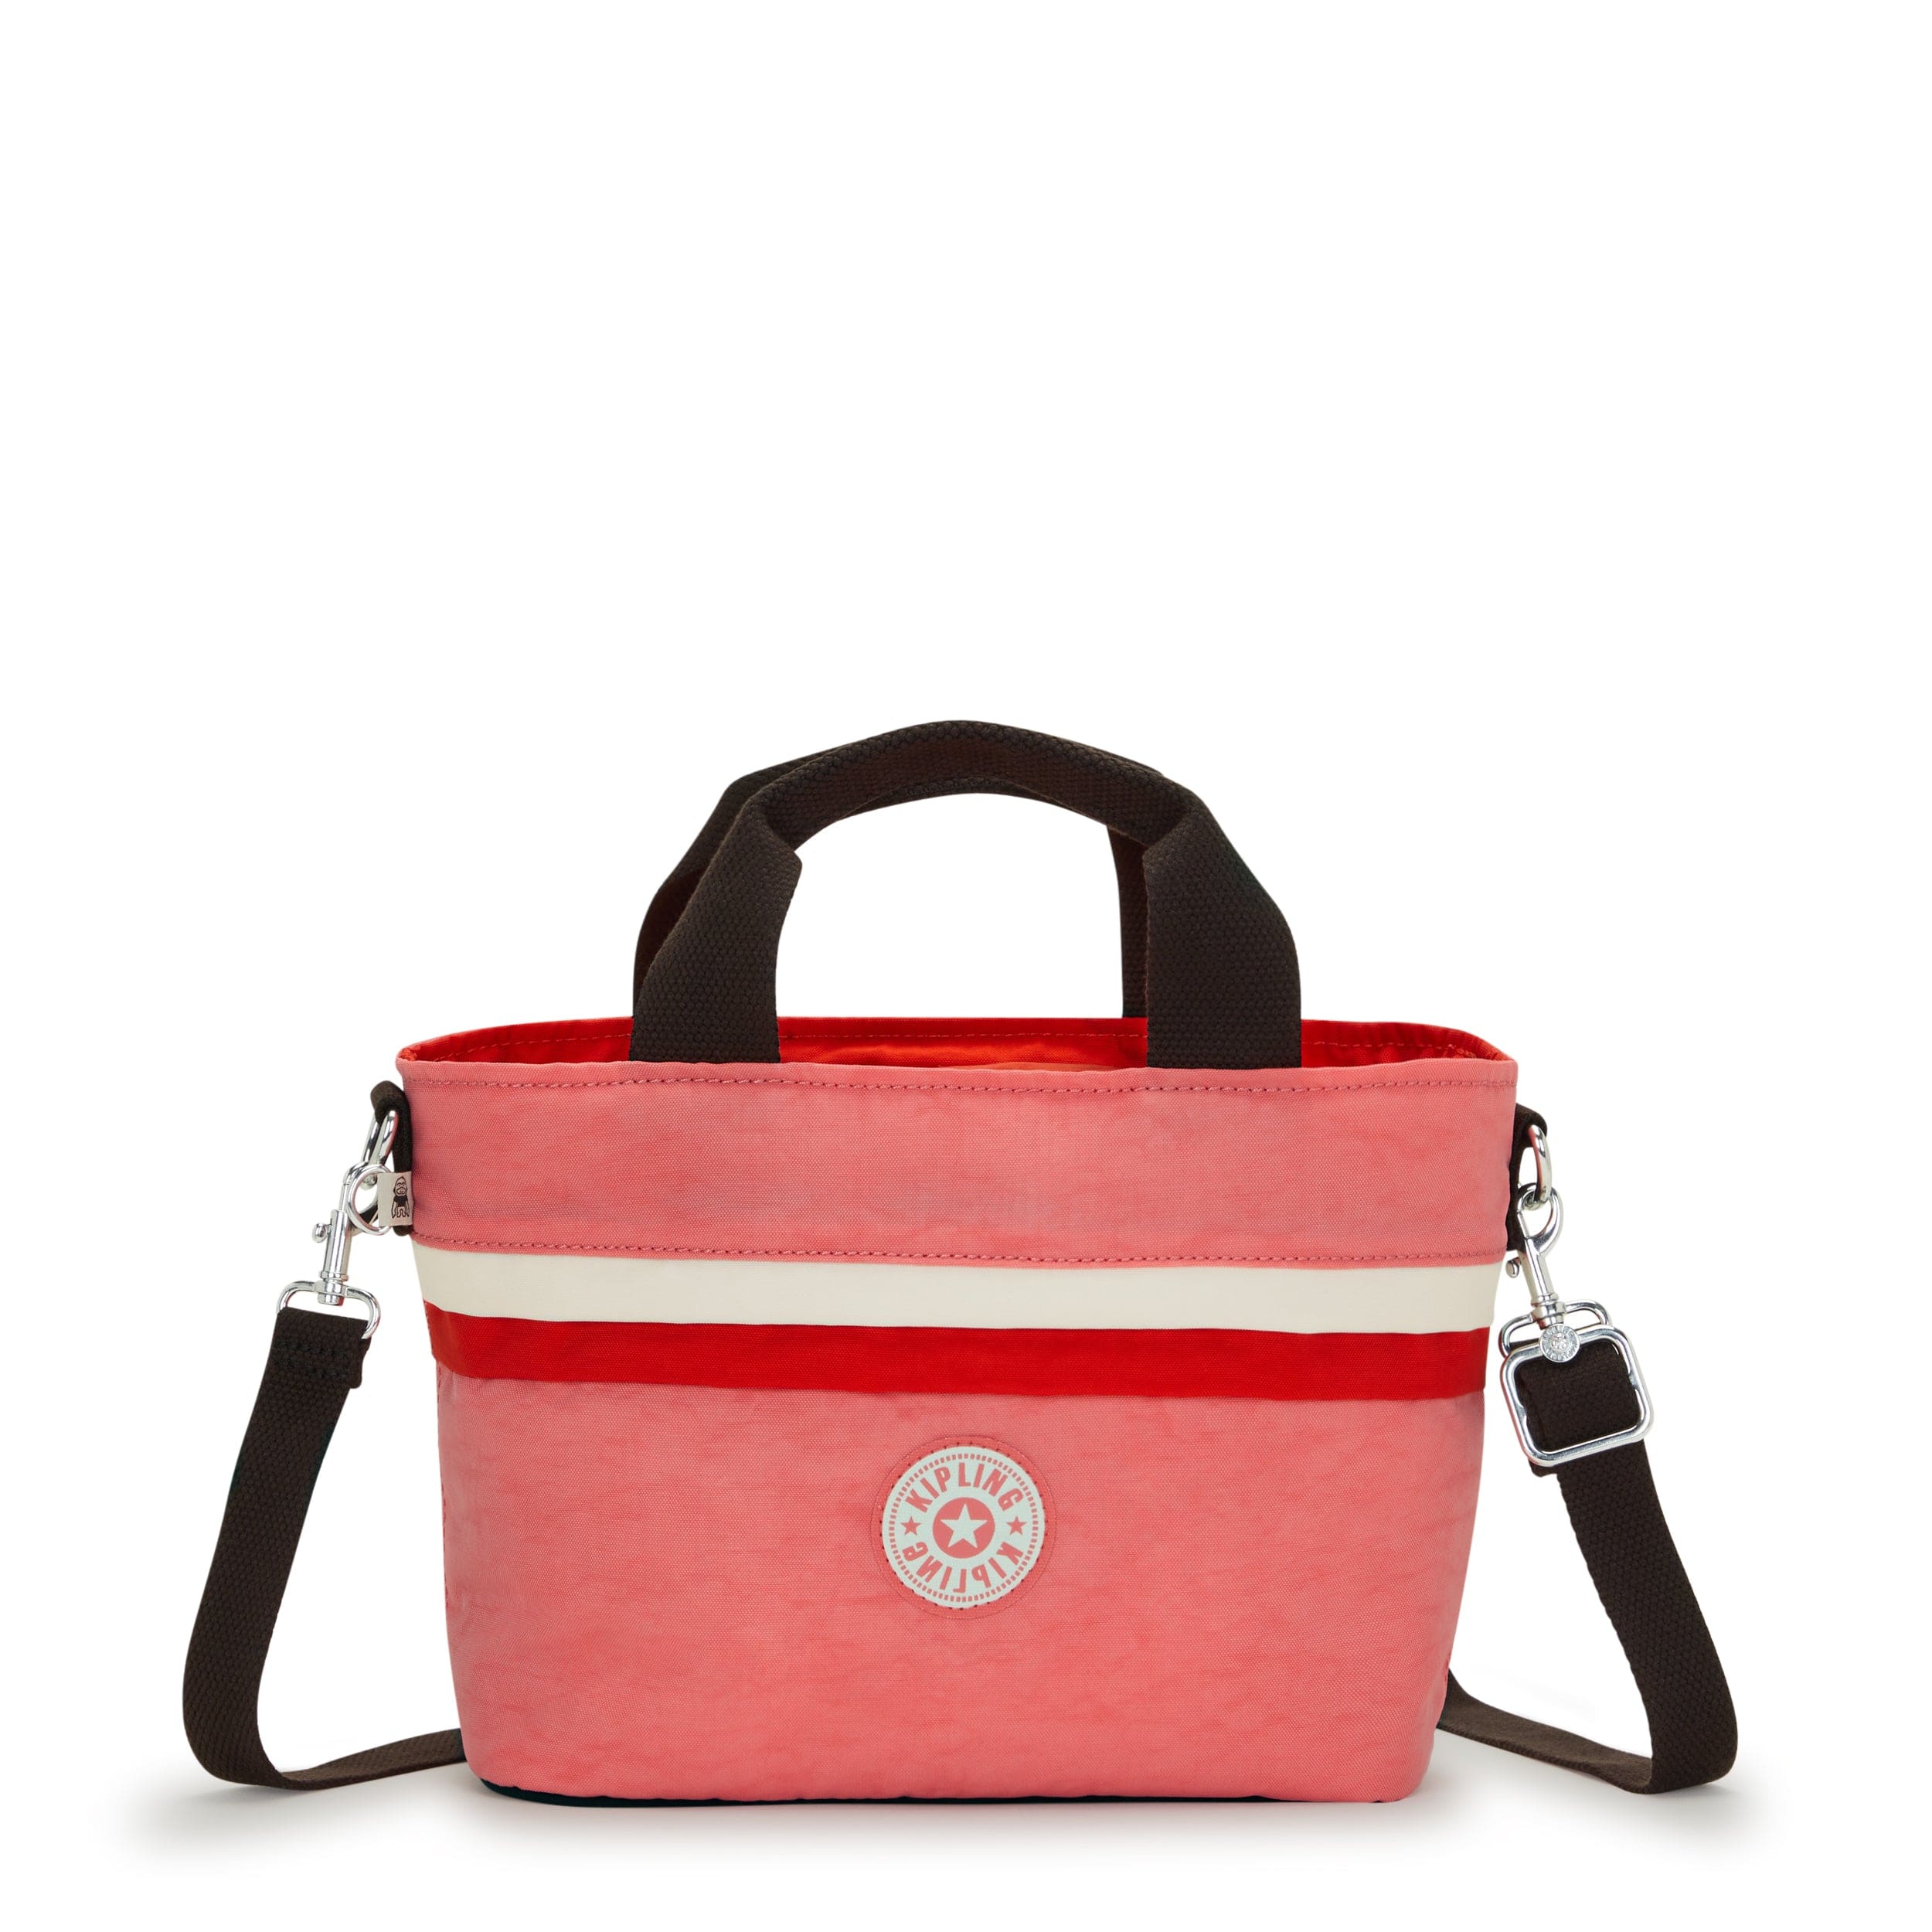 KIPLING-Minta-Small Shoulder Bag (With Removable Shoulder Strap)-Tango Pink Block-I6370-S7M